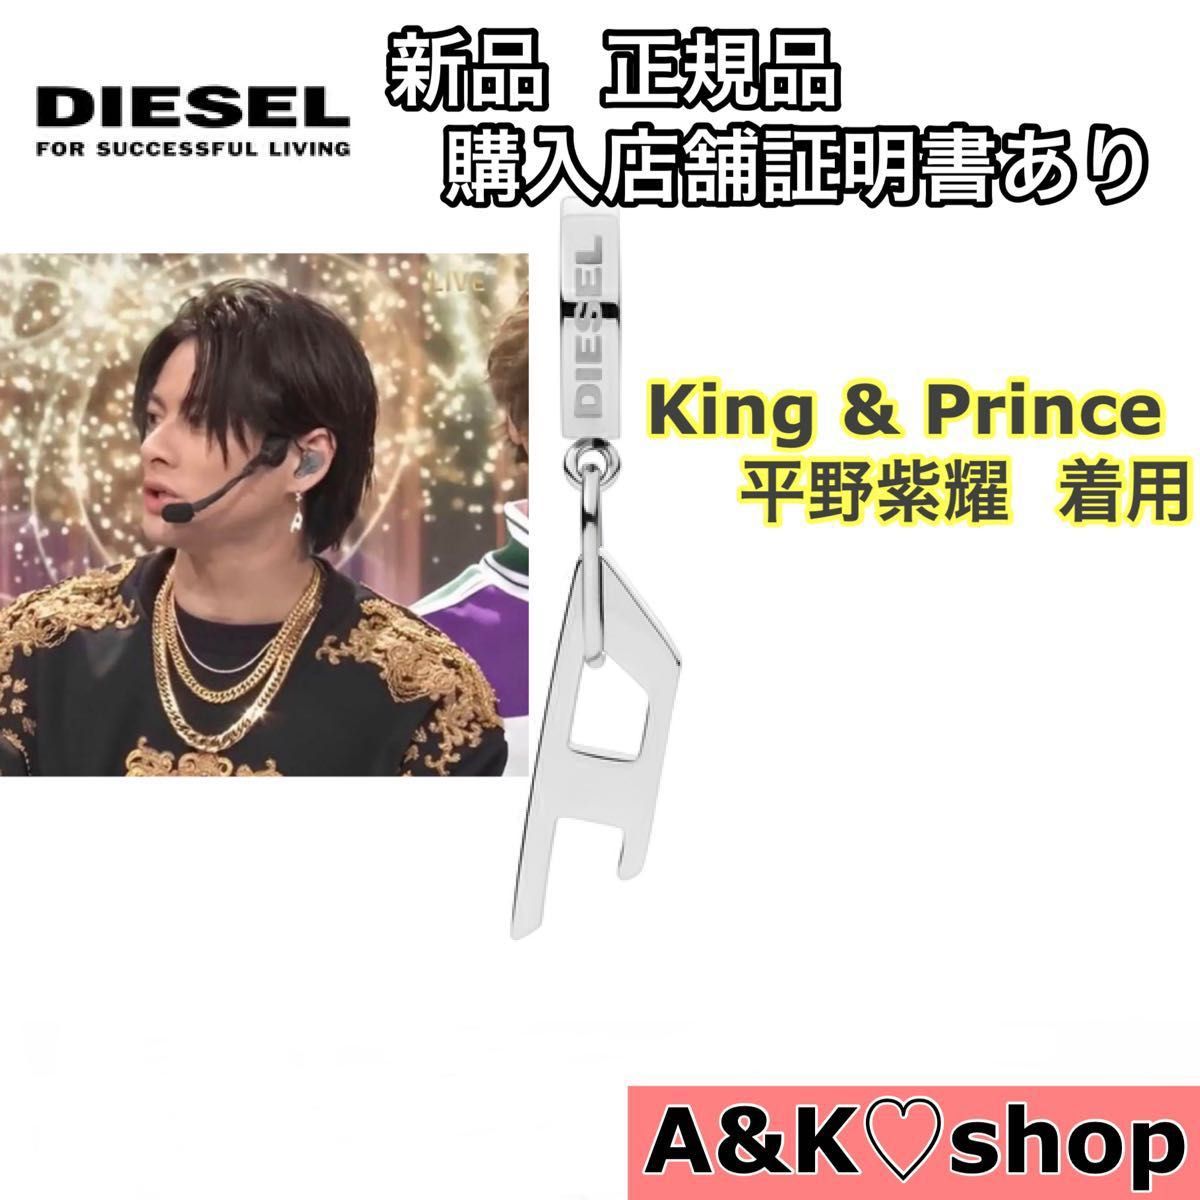 新品 正規品 diesel ピアス King & Prince 平野紫耀 シルバー